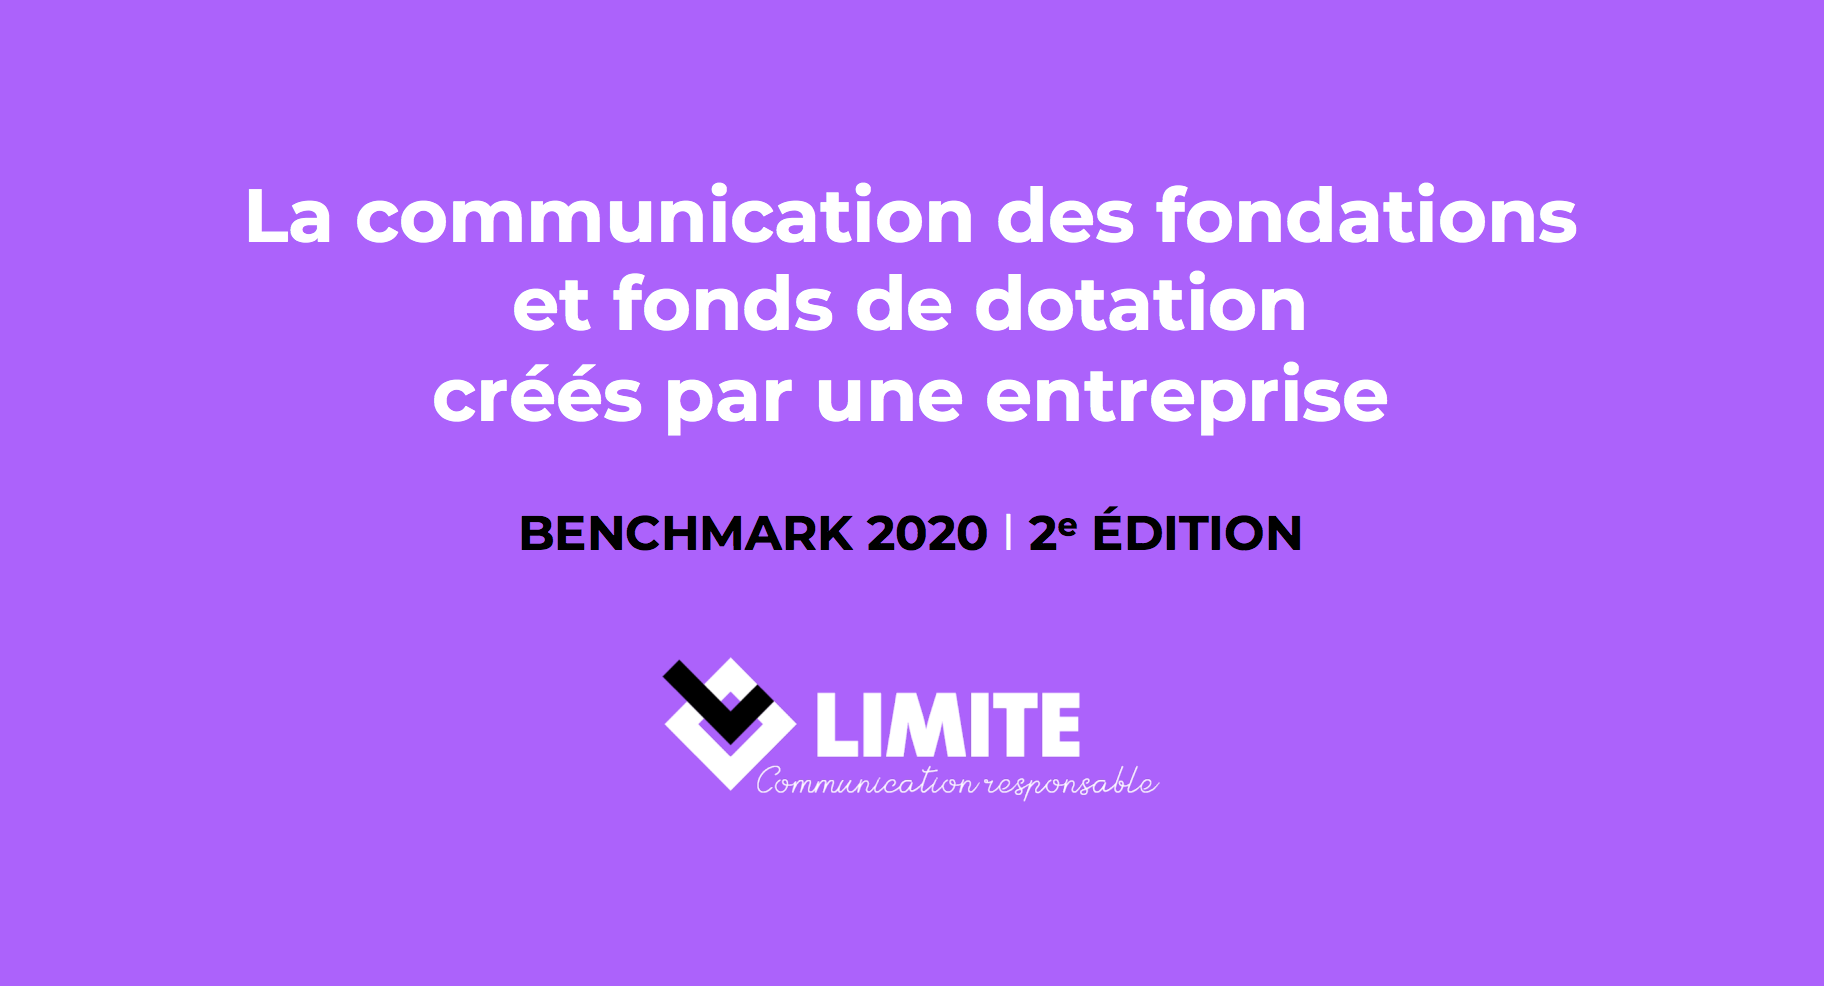 La communication des fondations et fonds de dotation créés par une entreprise : benchmark réalisé par l'Agence LIMITE. 2e éd., 2020